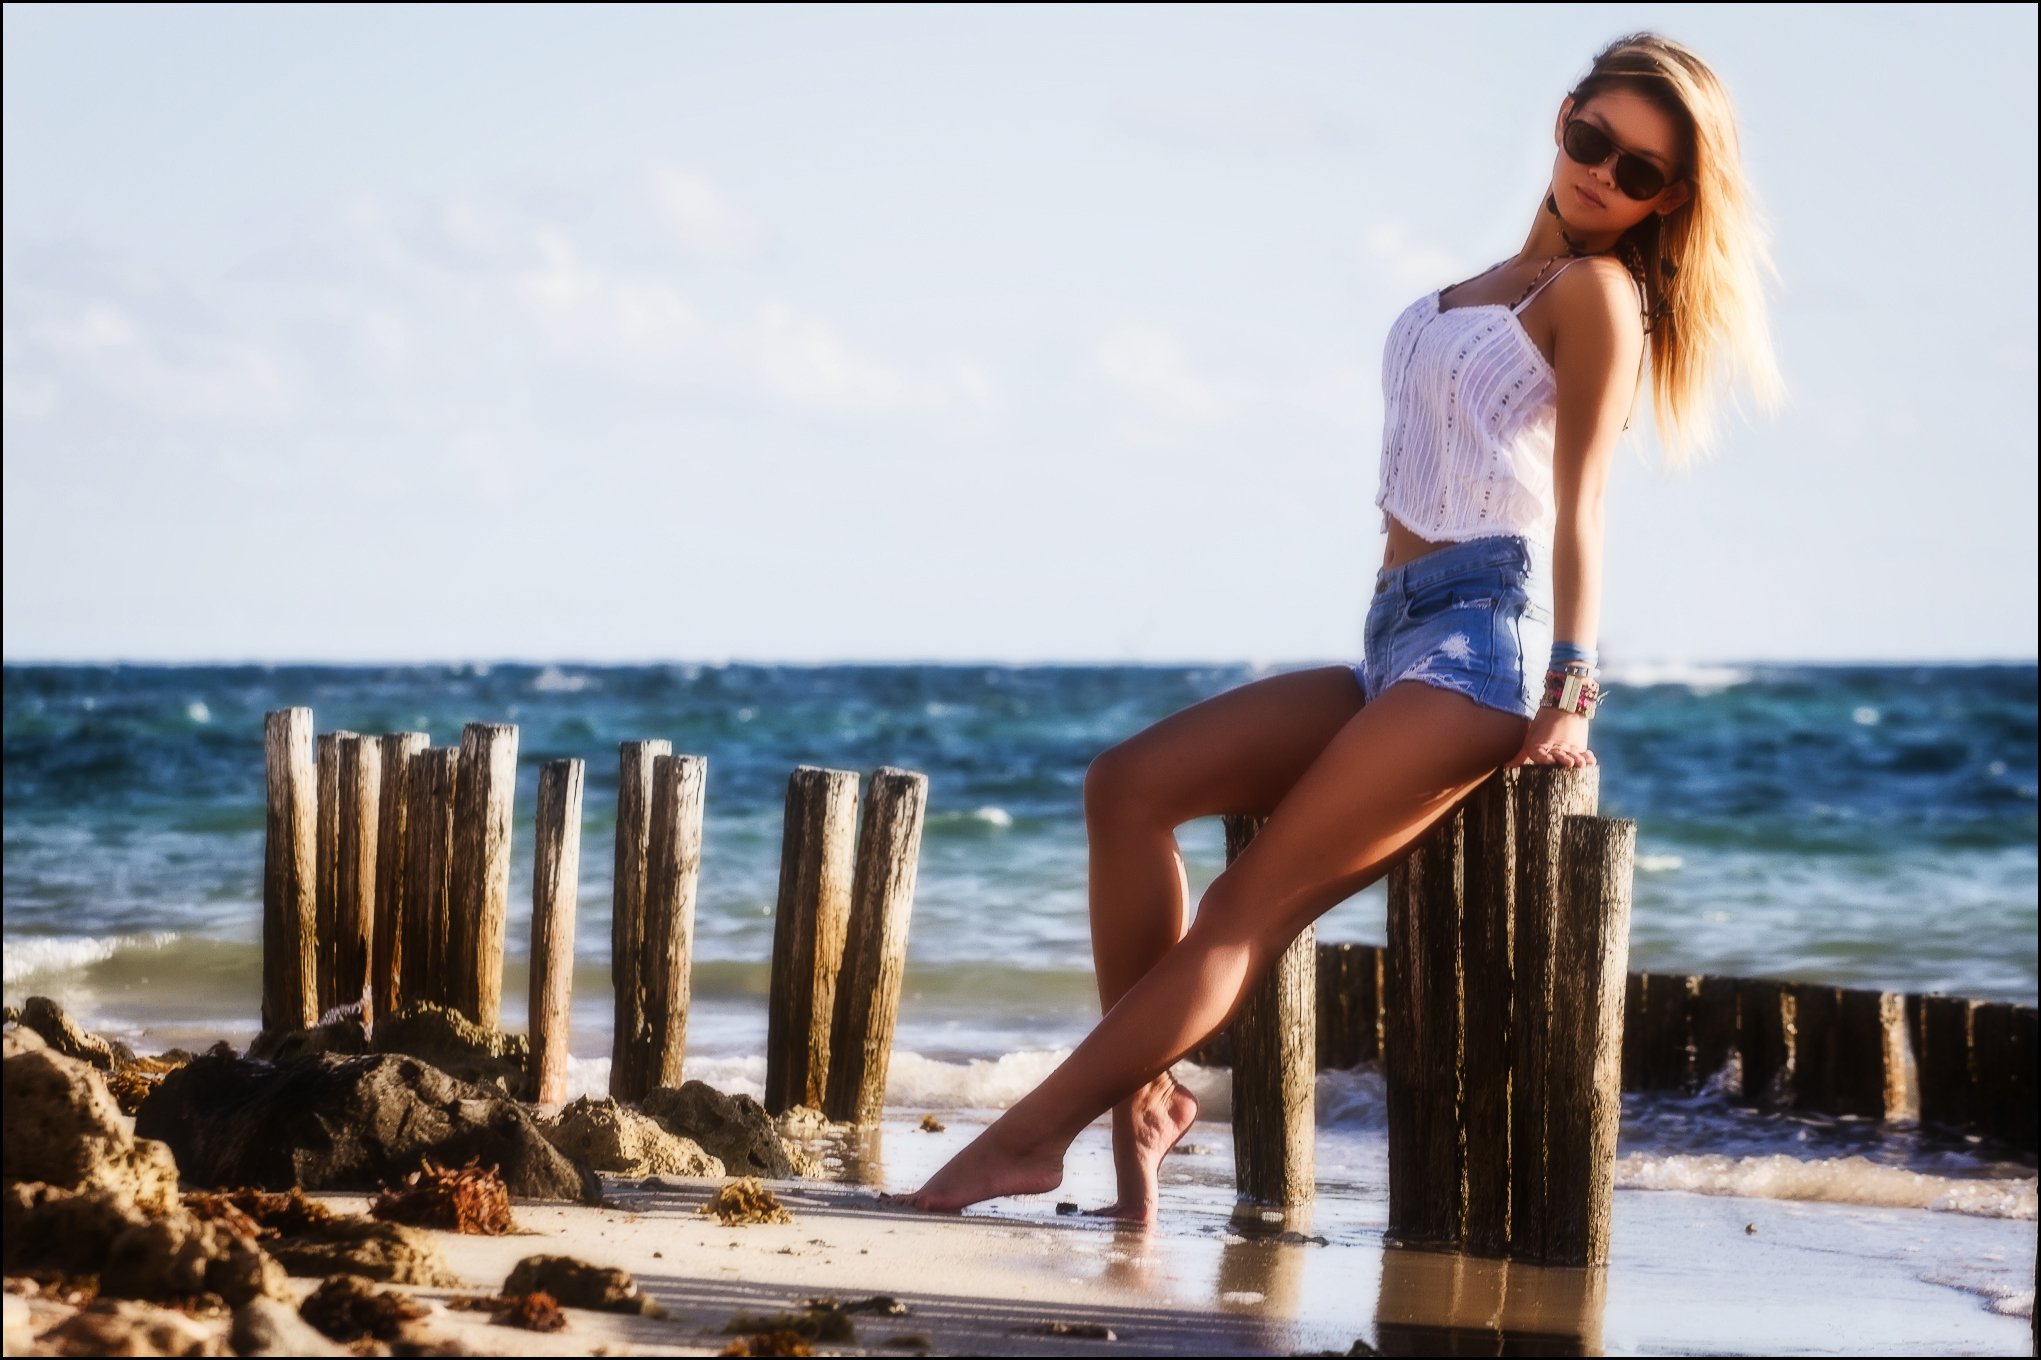 Пока в шортах. Девушка в шортах. Фотосессия на пляже в шортах. Красивые девушки на пляже в шортах. Девушка в шортах на пляже.